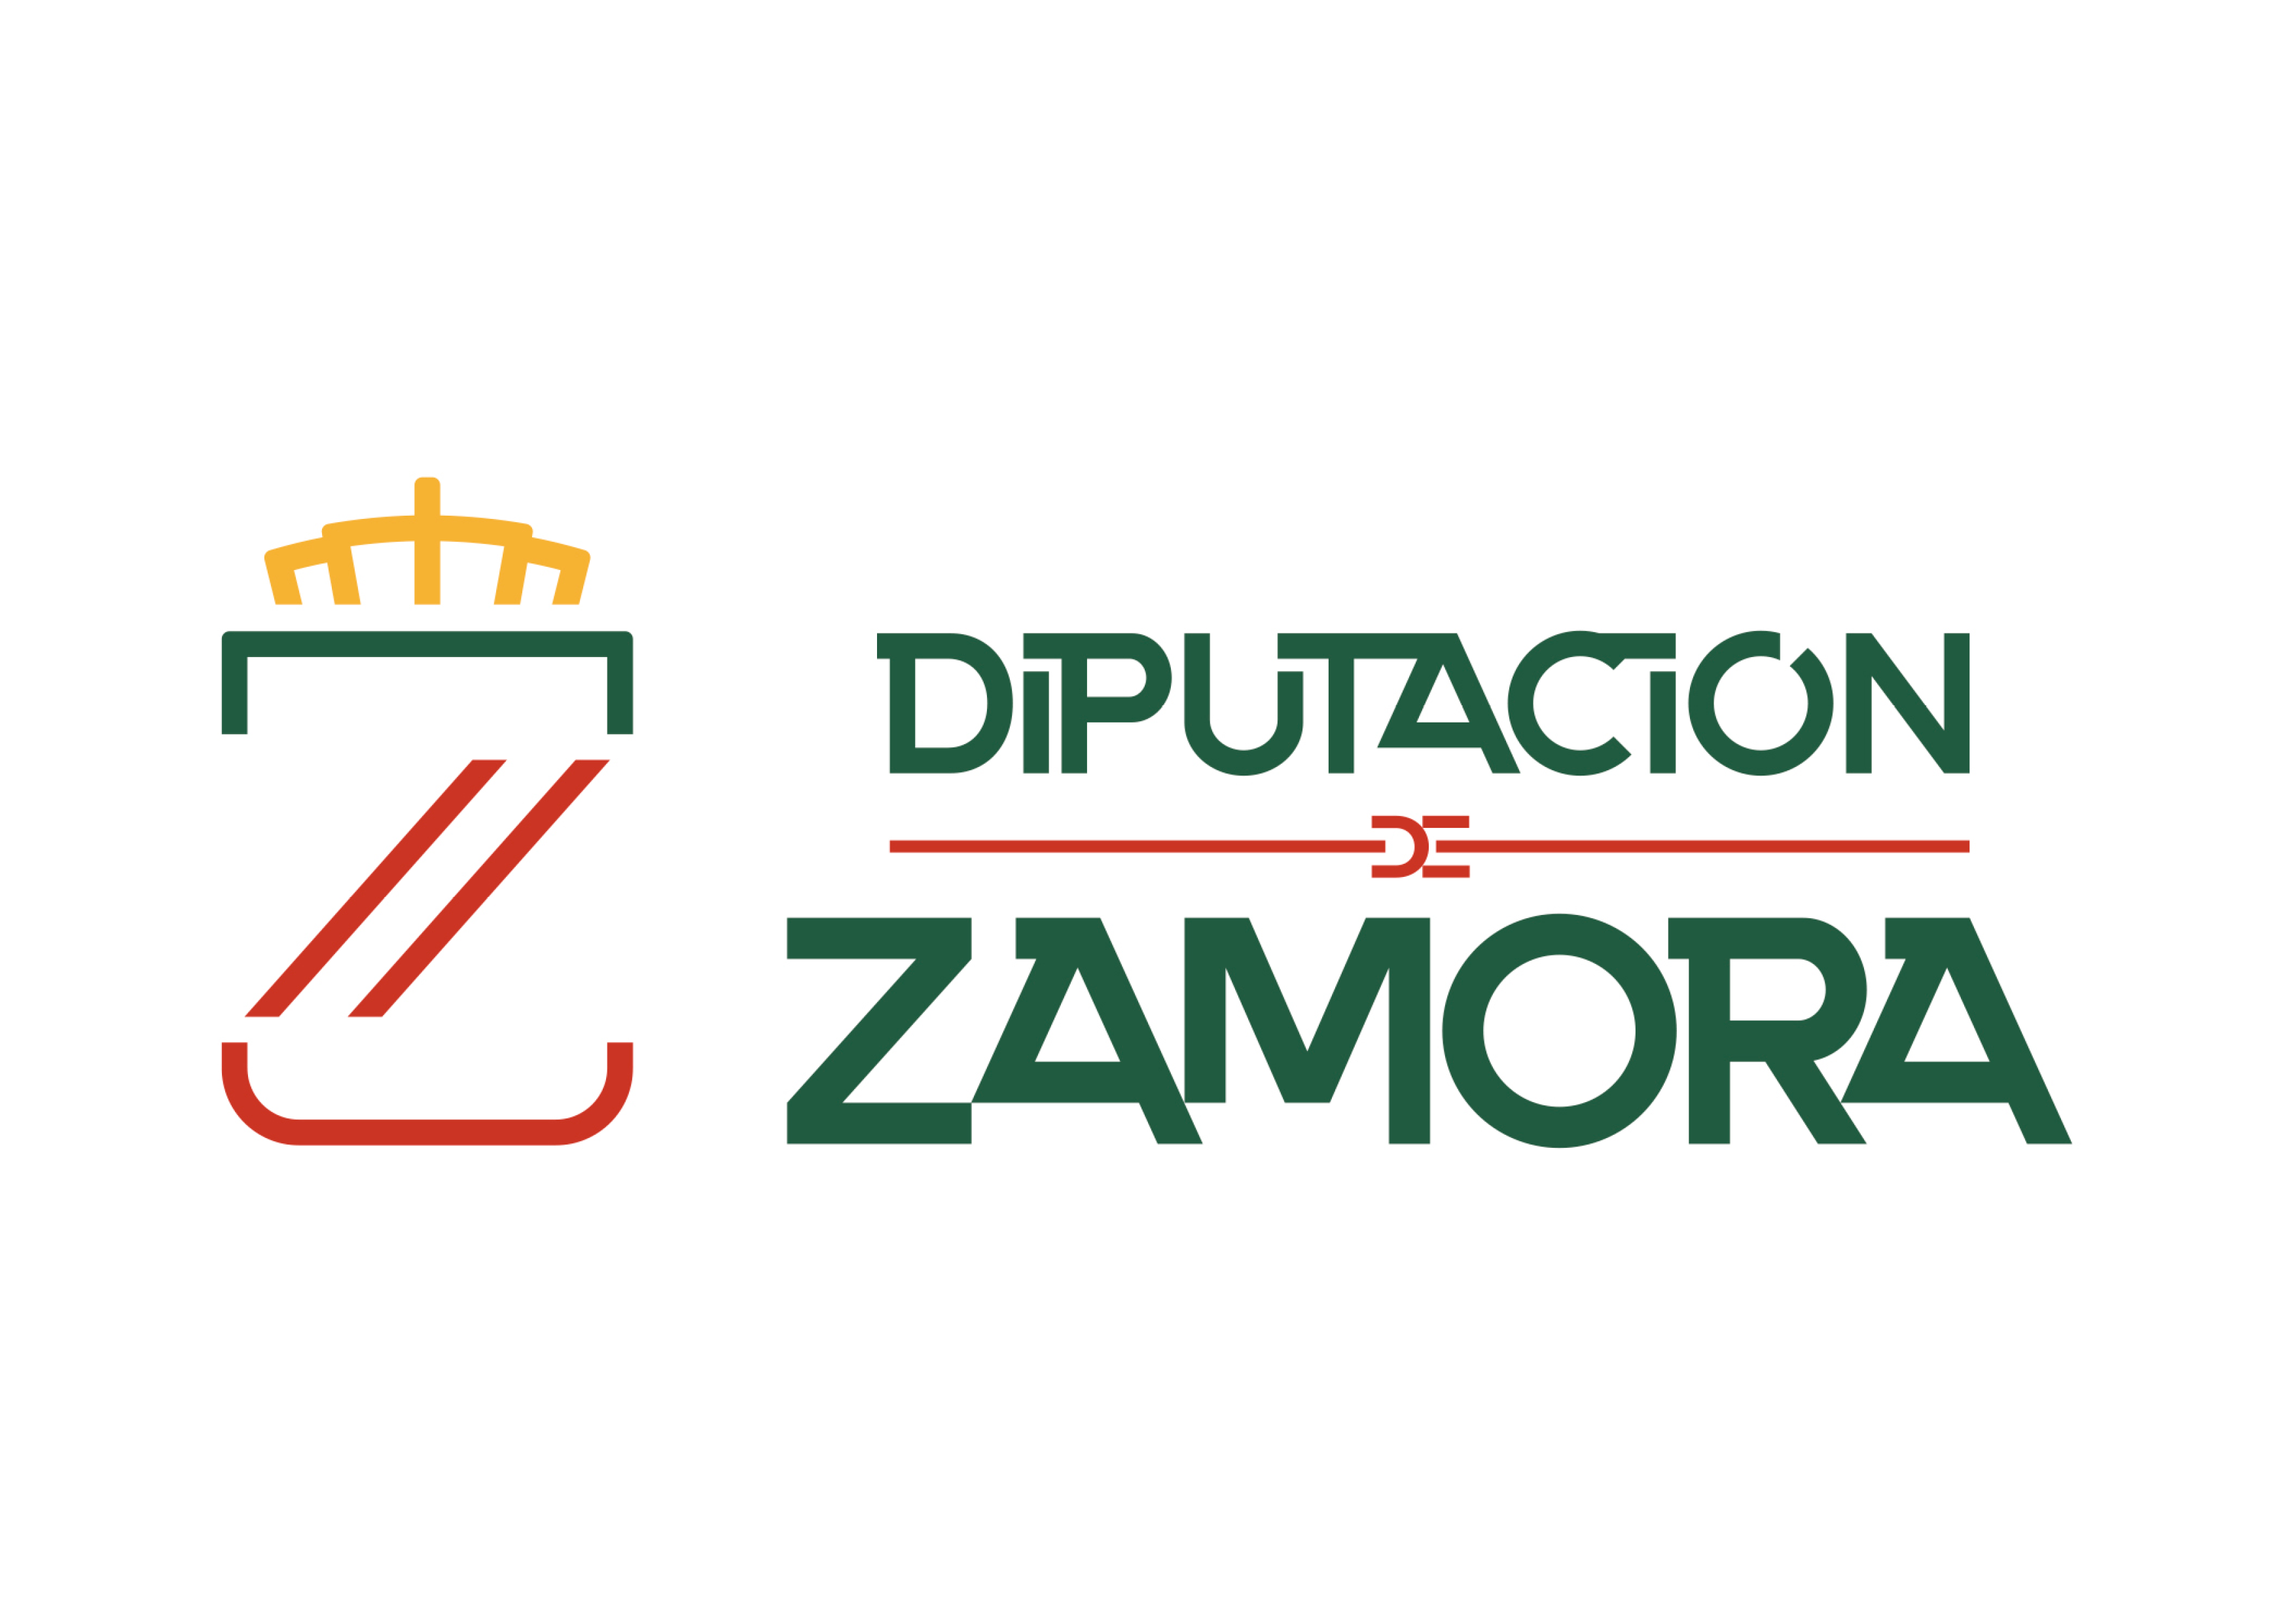 Diputación Zamora logotipo